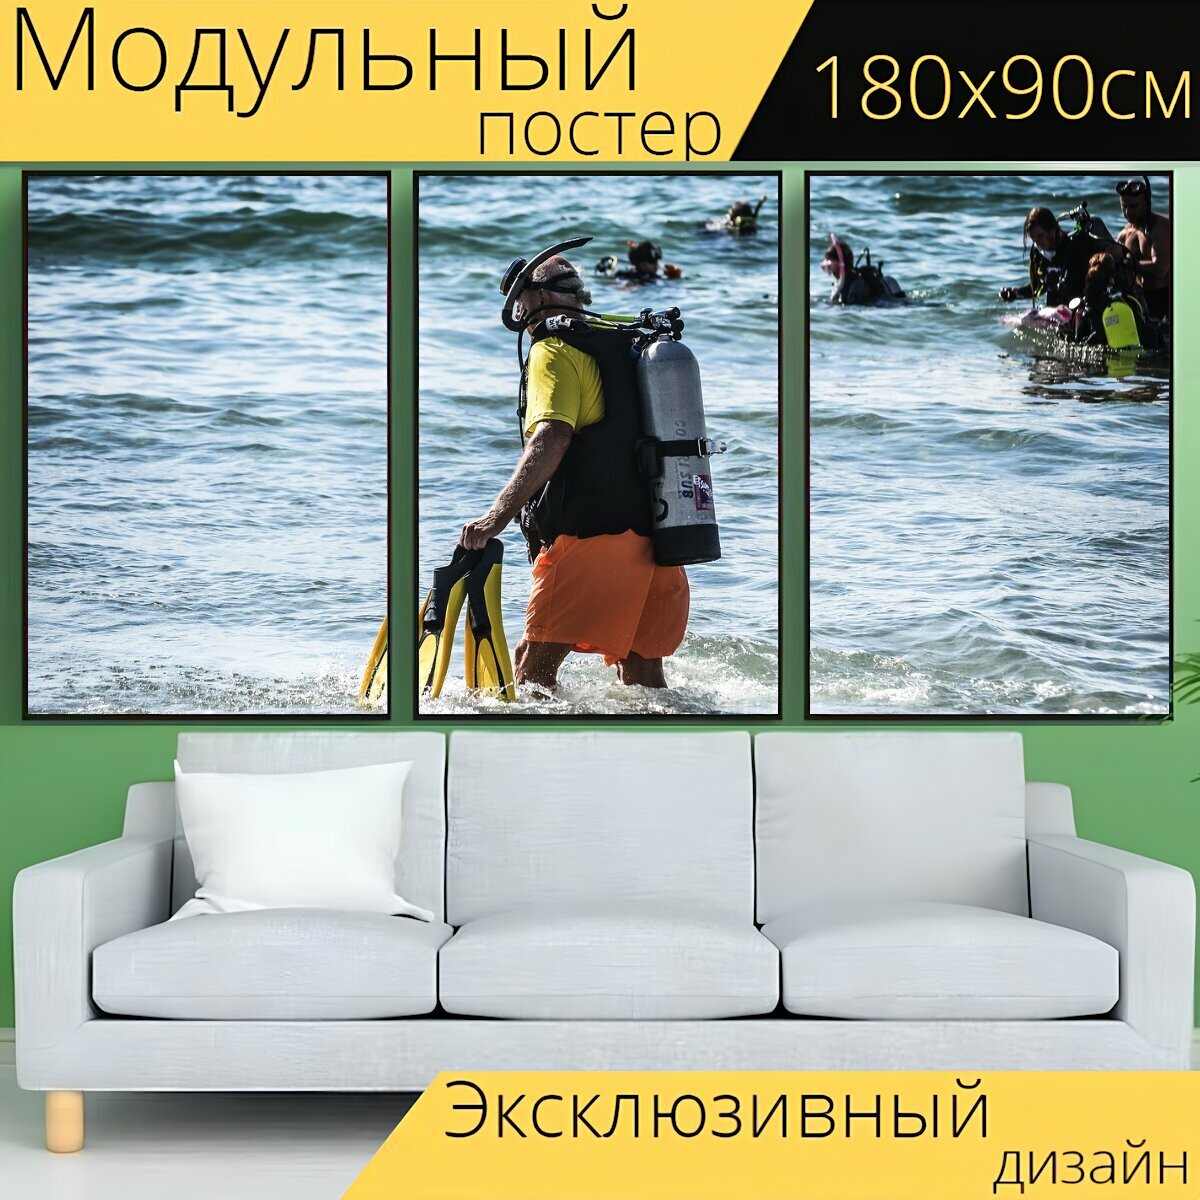 Модульный постер "Ныряльщик, дайвинг, океан" 180 x 90 см. для интерьера